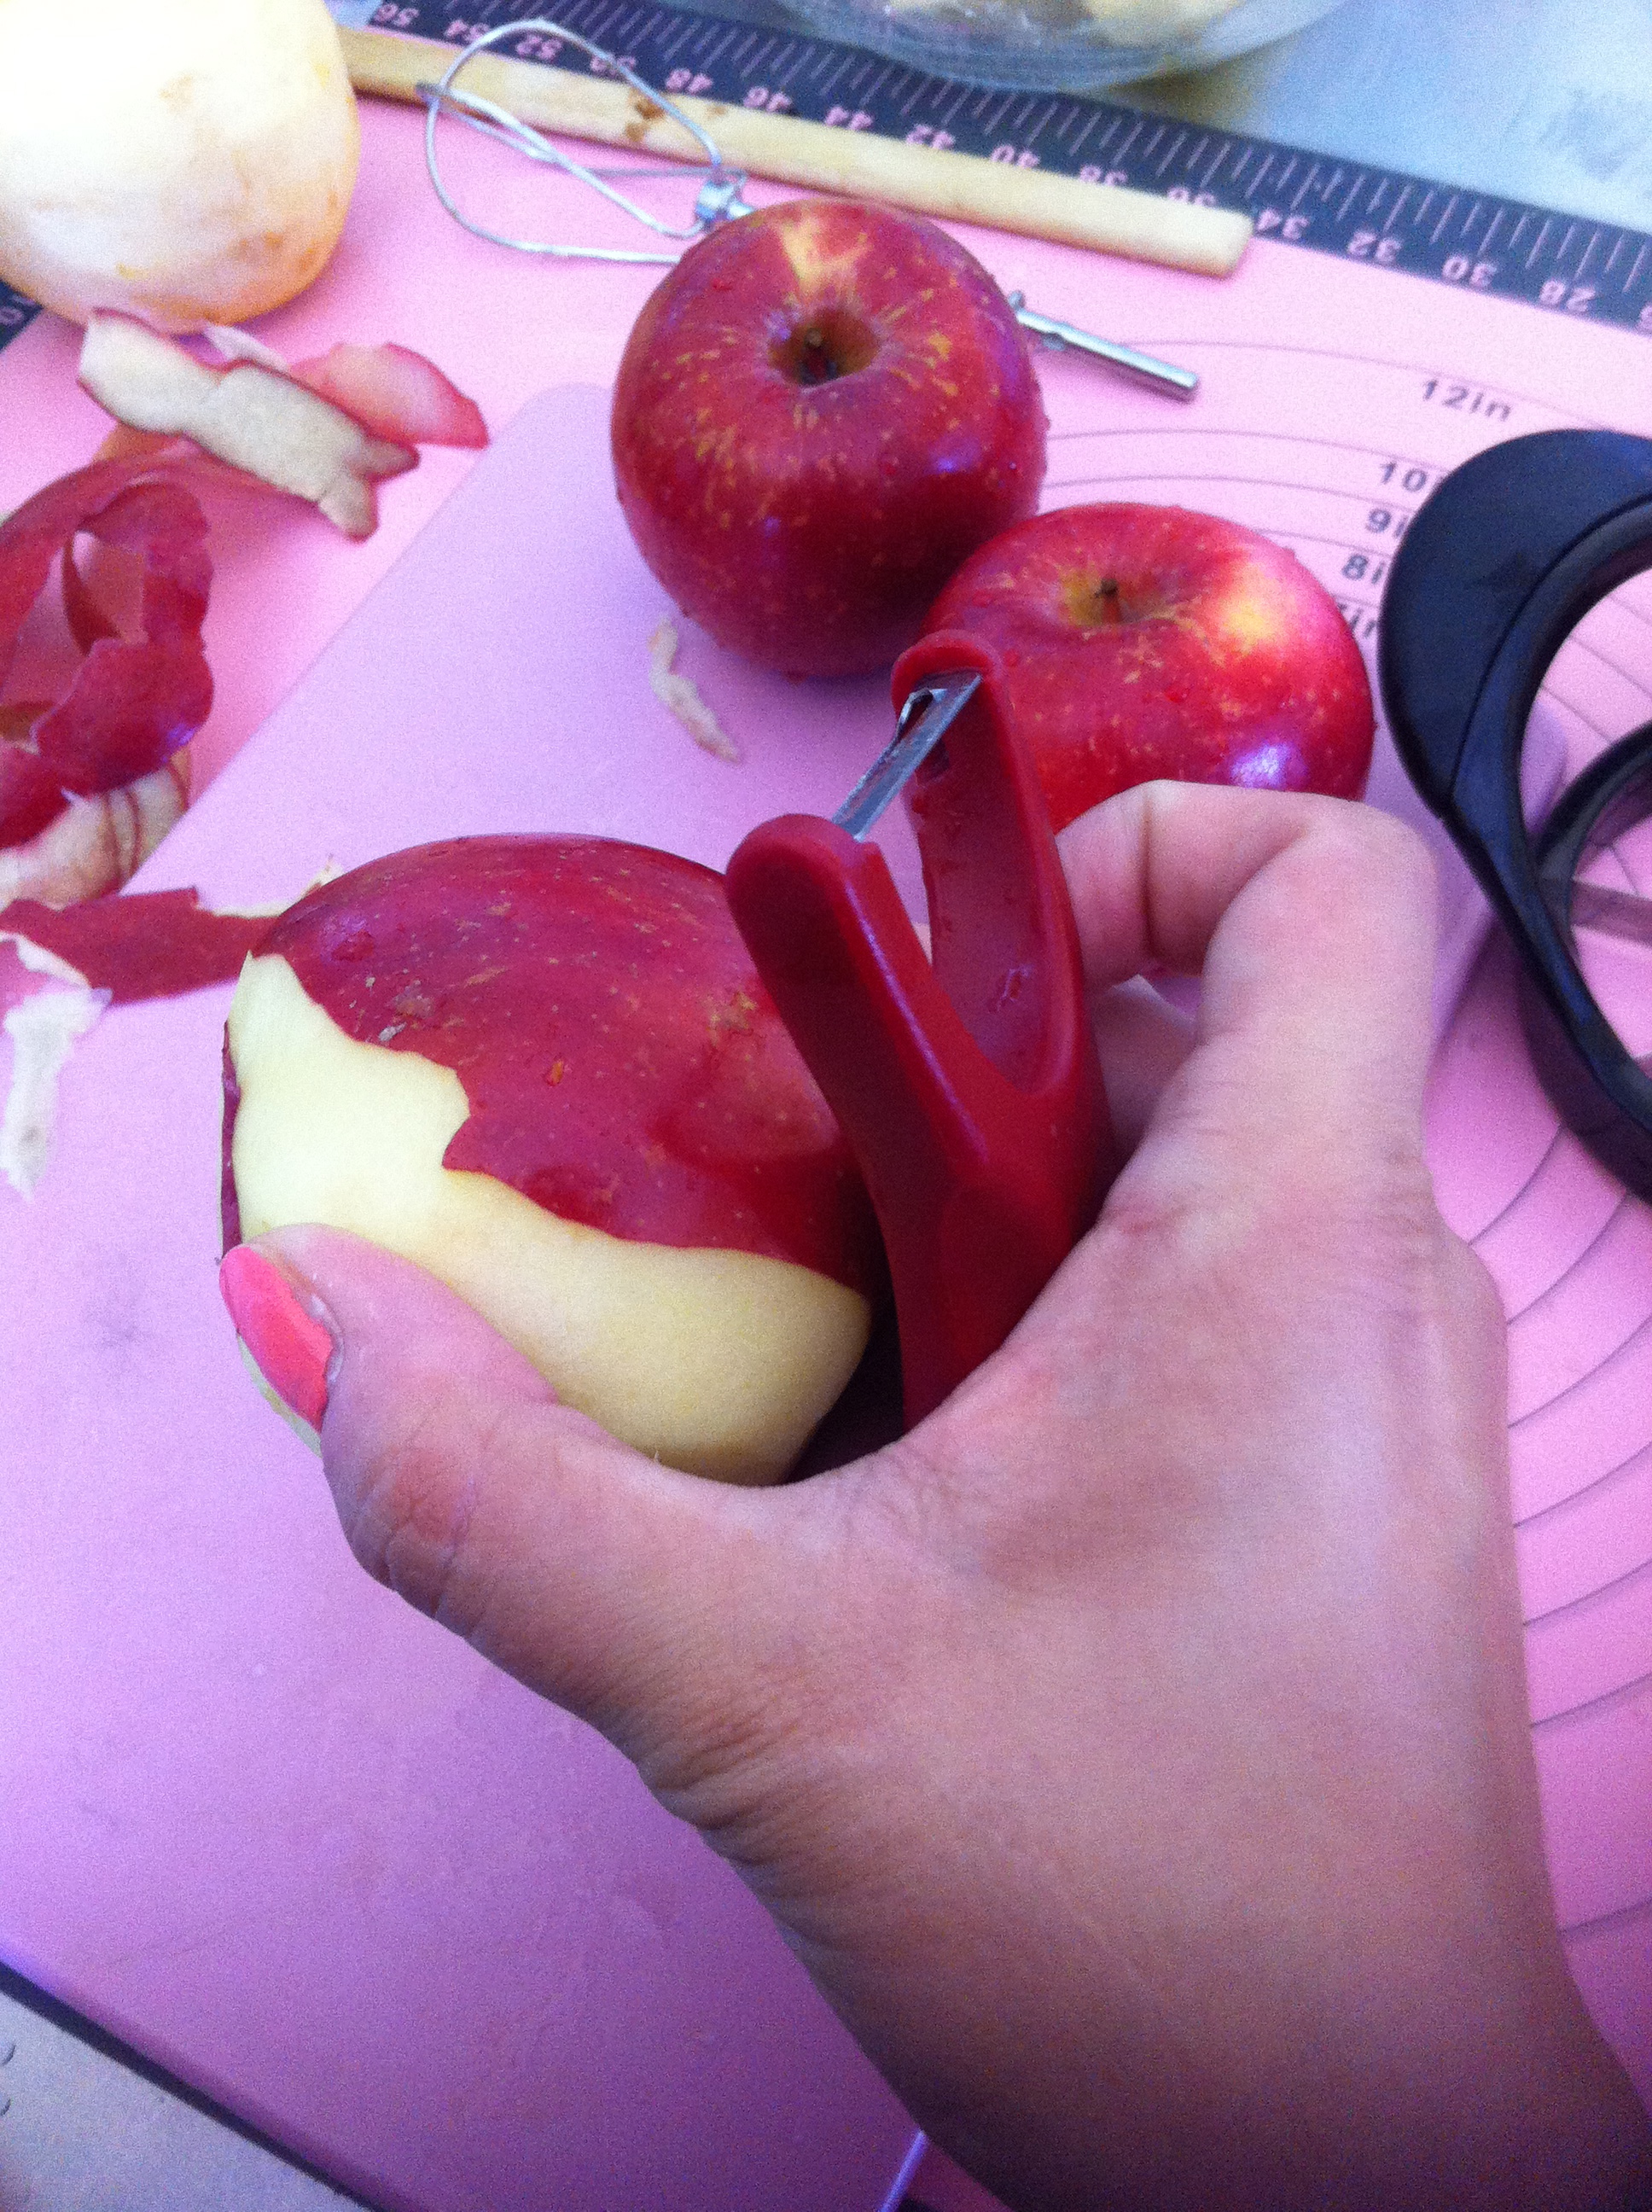 Peeling apples...